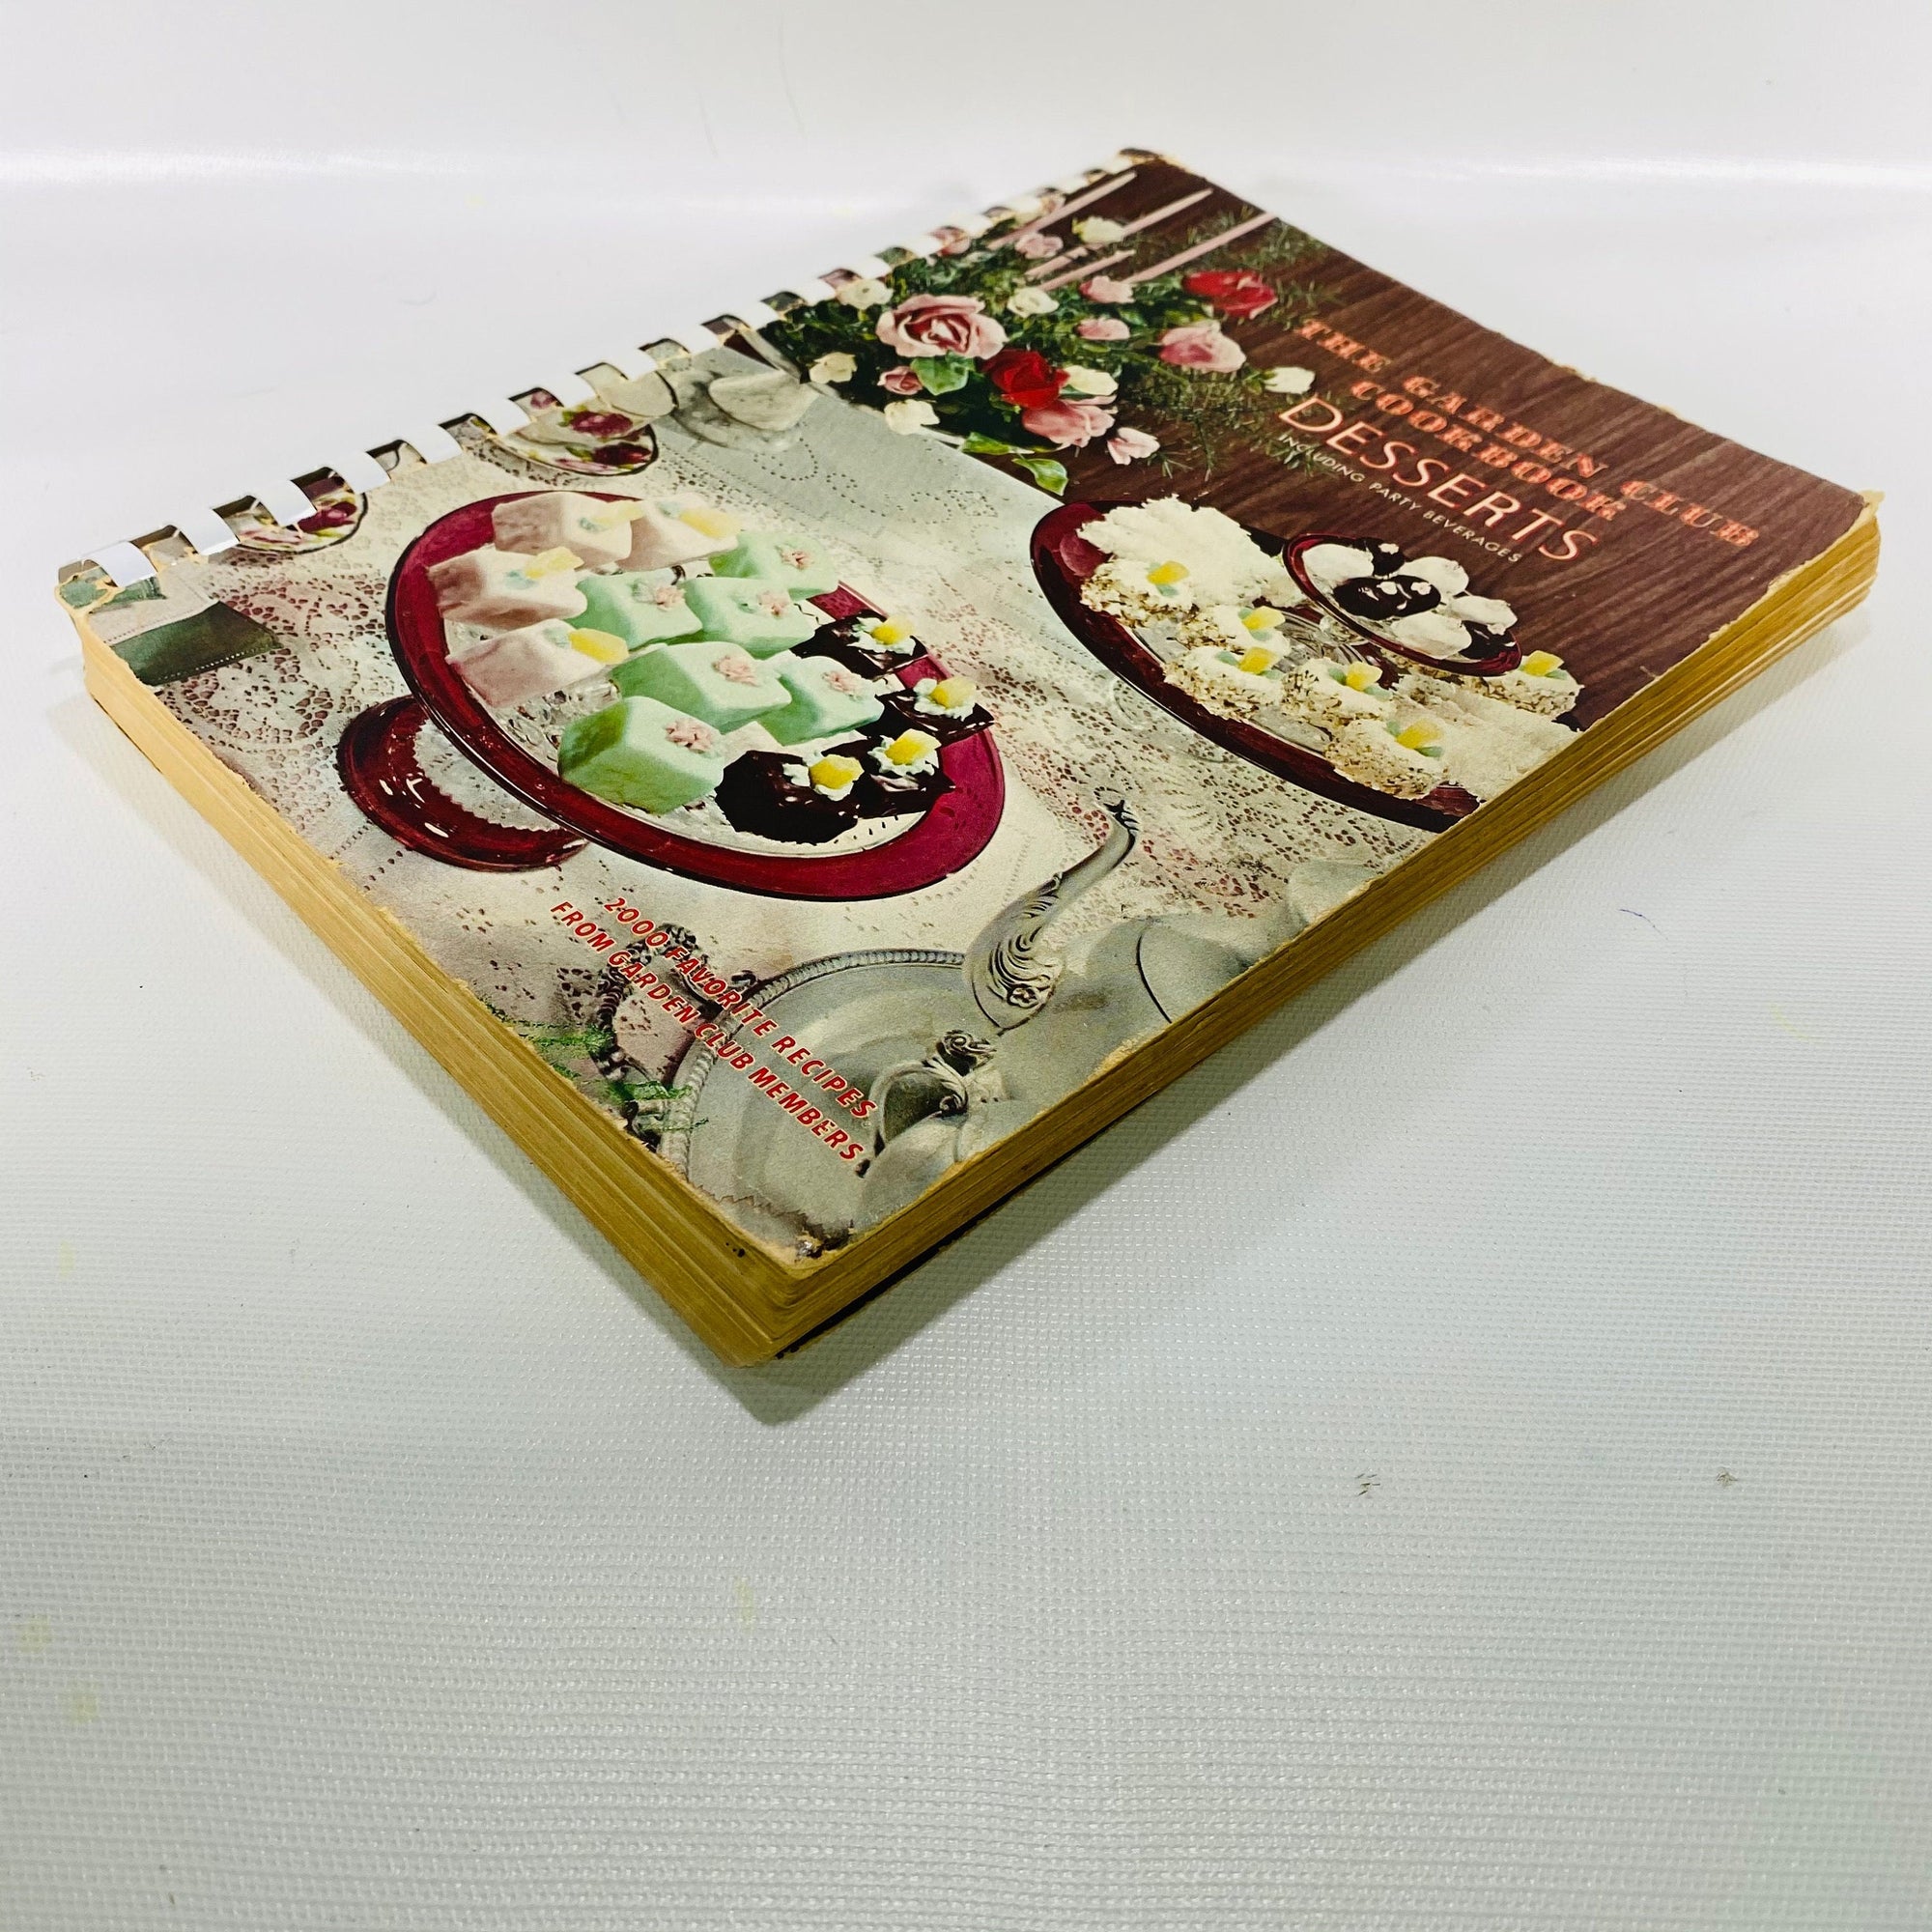 The Garden Club Cookbook Desserts including Party Beverages 1967  Vintage Cookbook